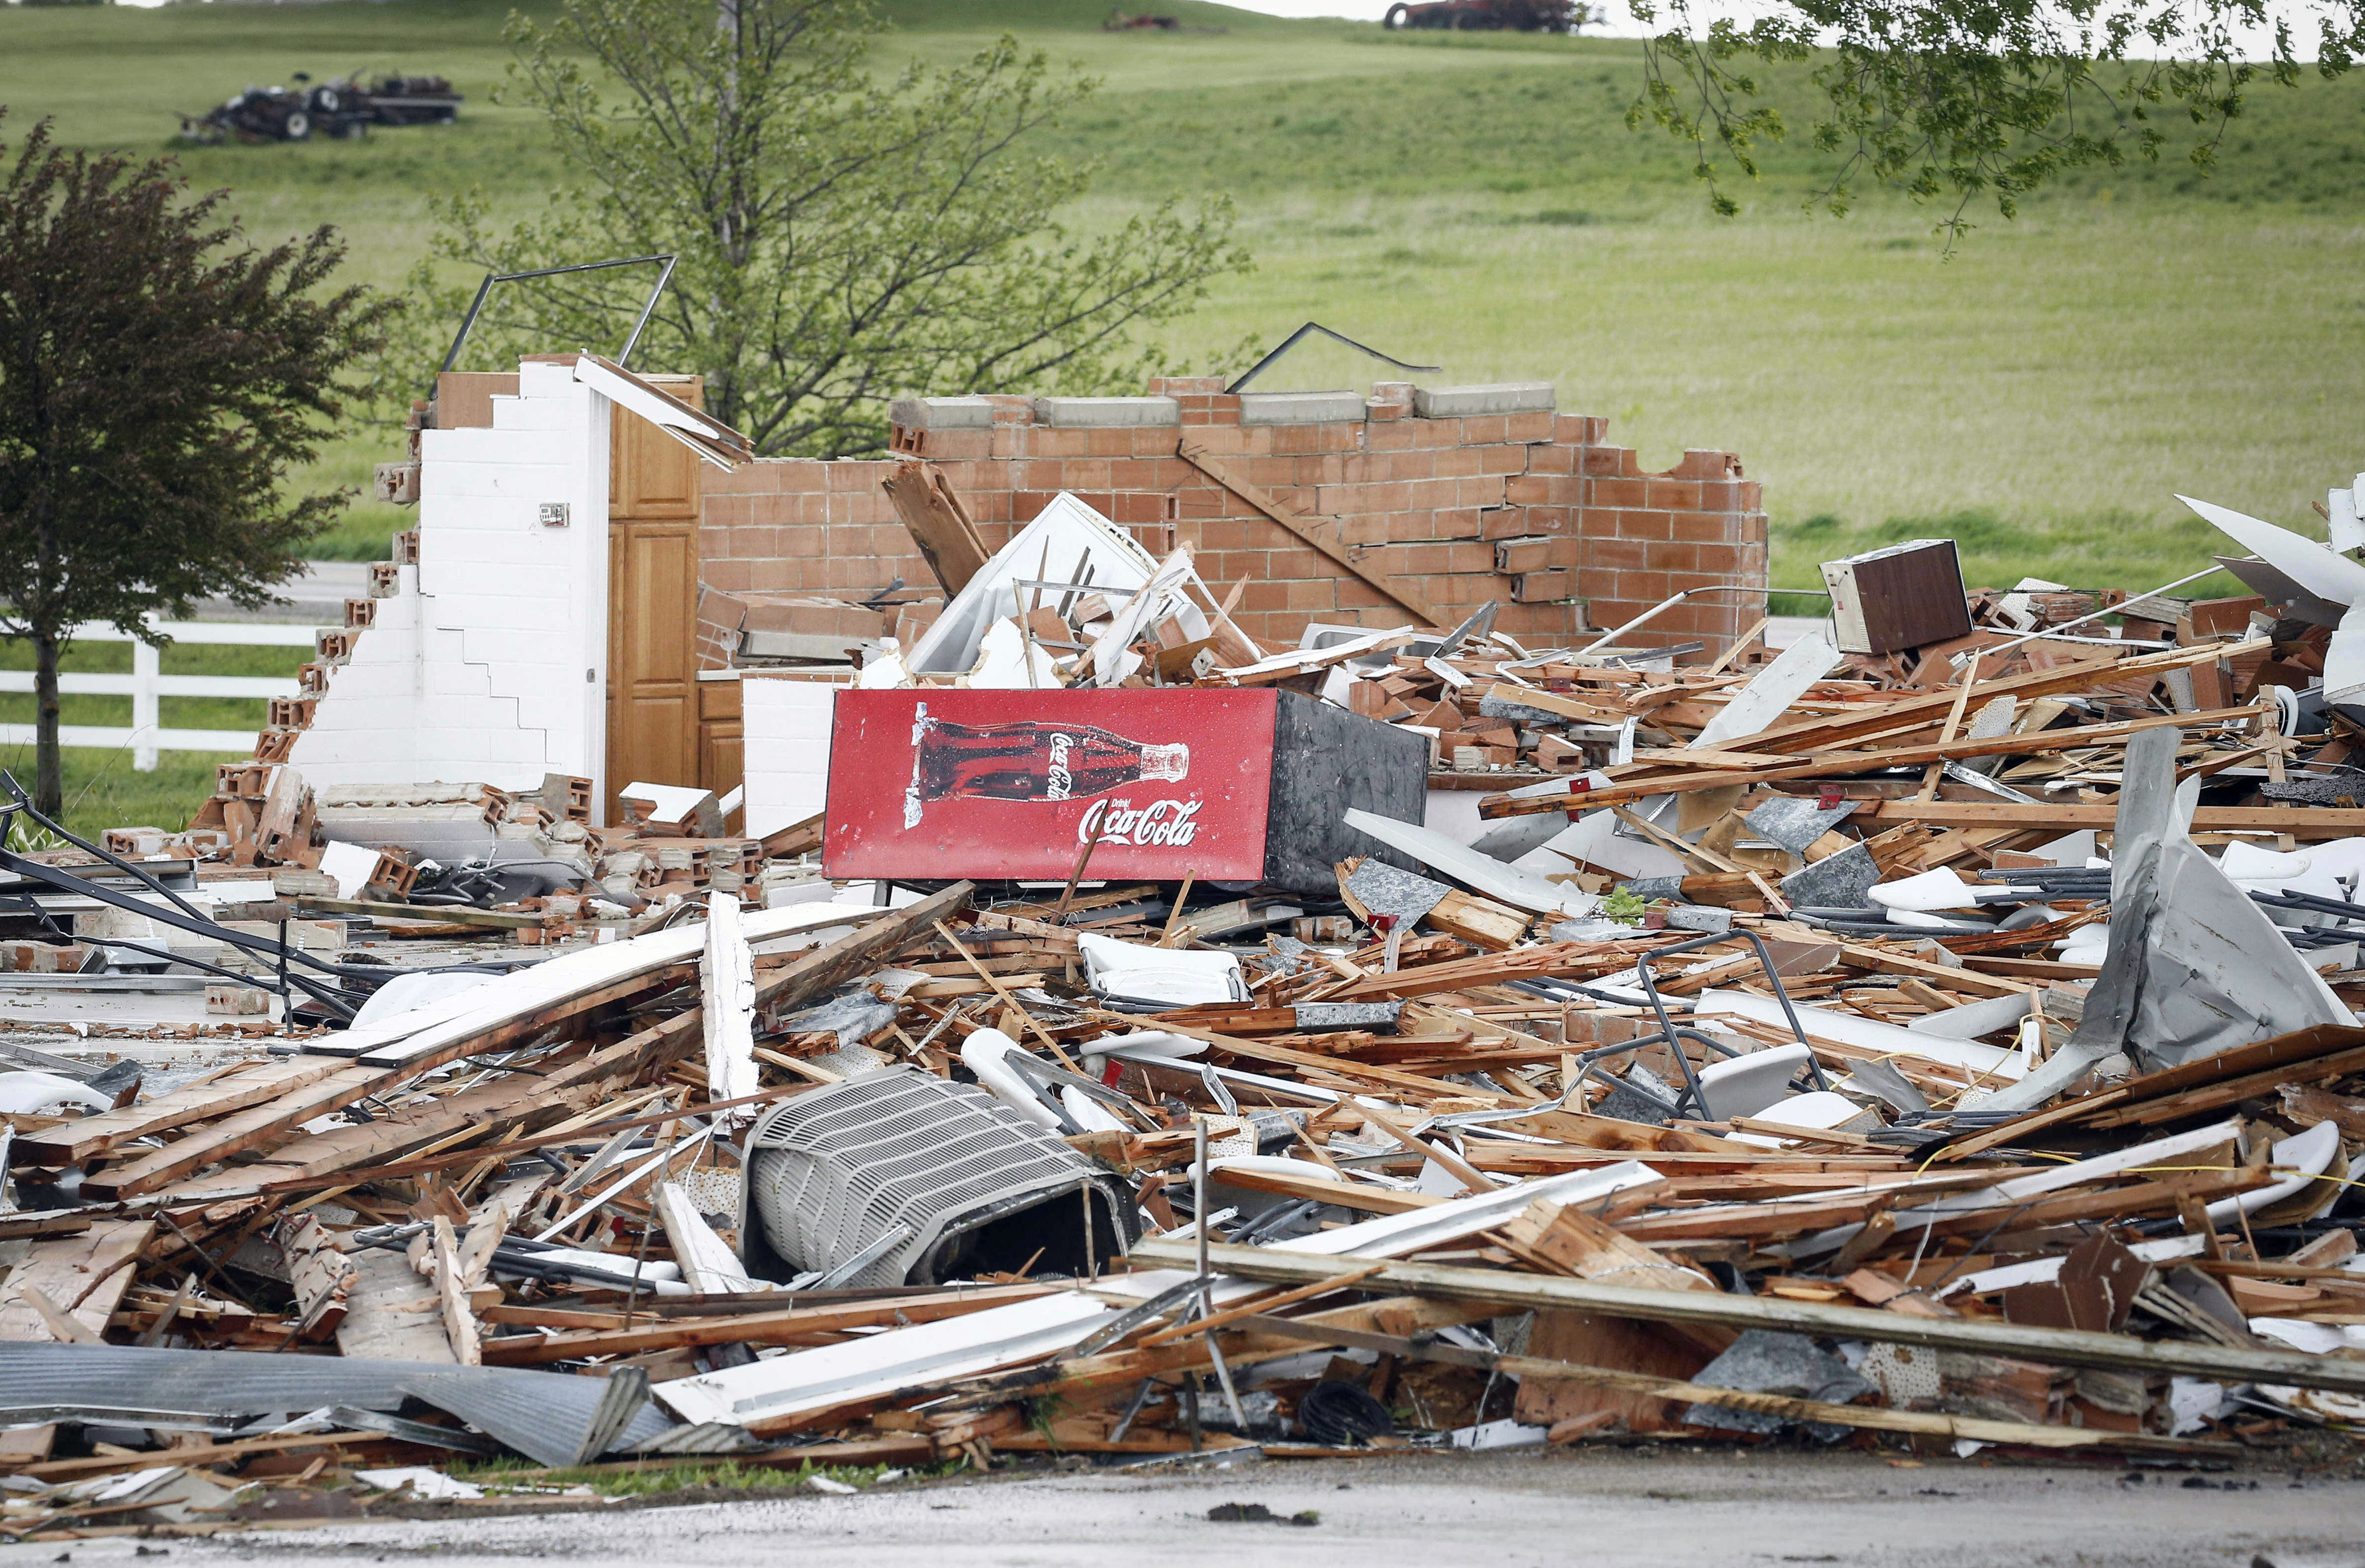 龙卷风“撕裂”美国爱荷华州 大树被连根拔起房屋成碎片